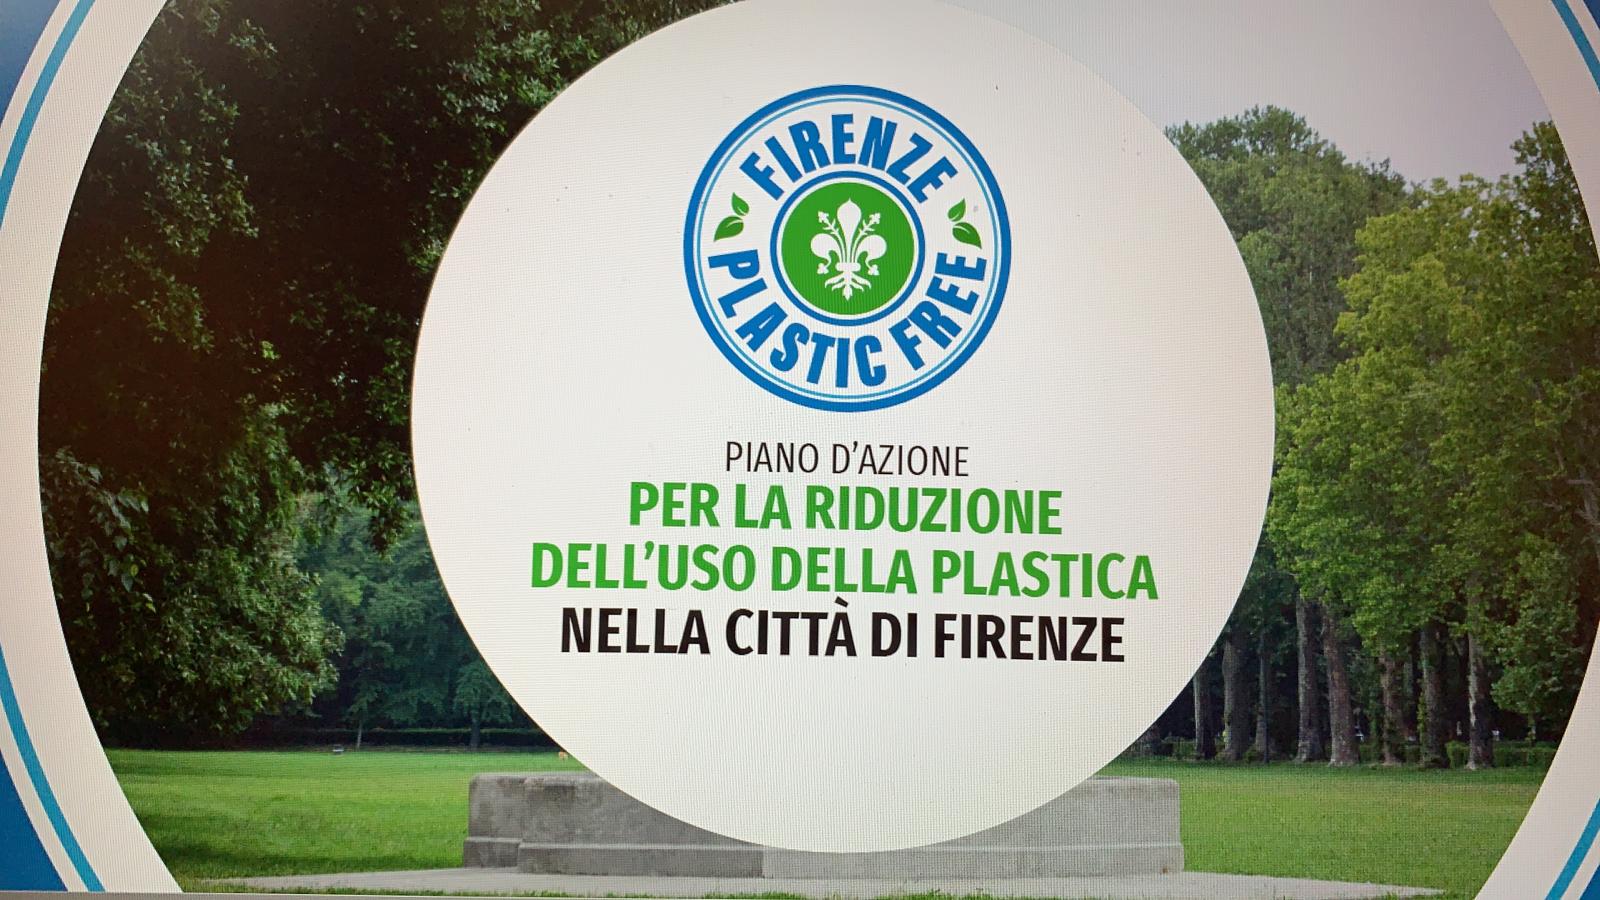 Firenze Plastic Free: adottato Piano per riduzione rifiuti plastici